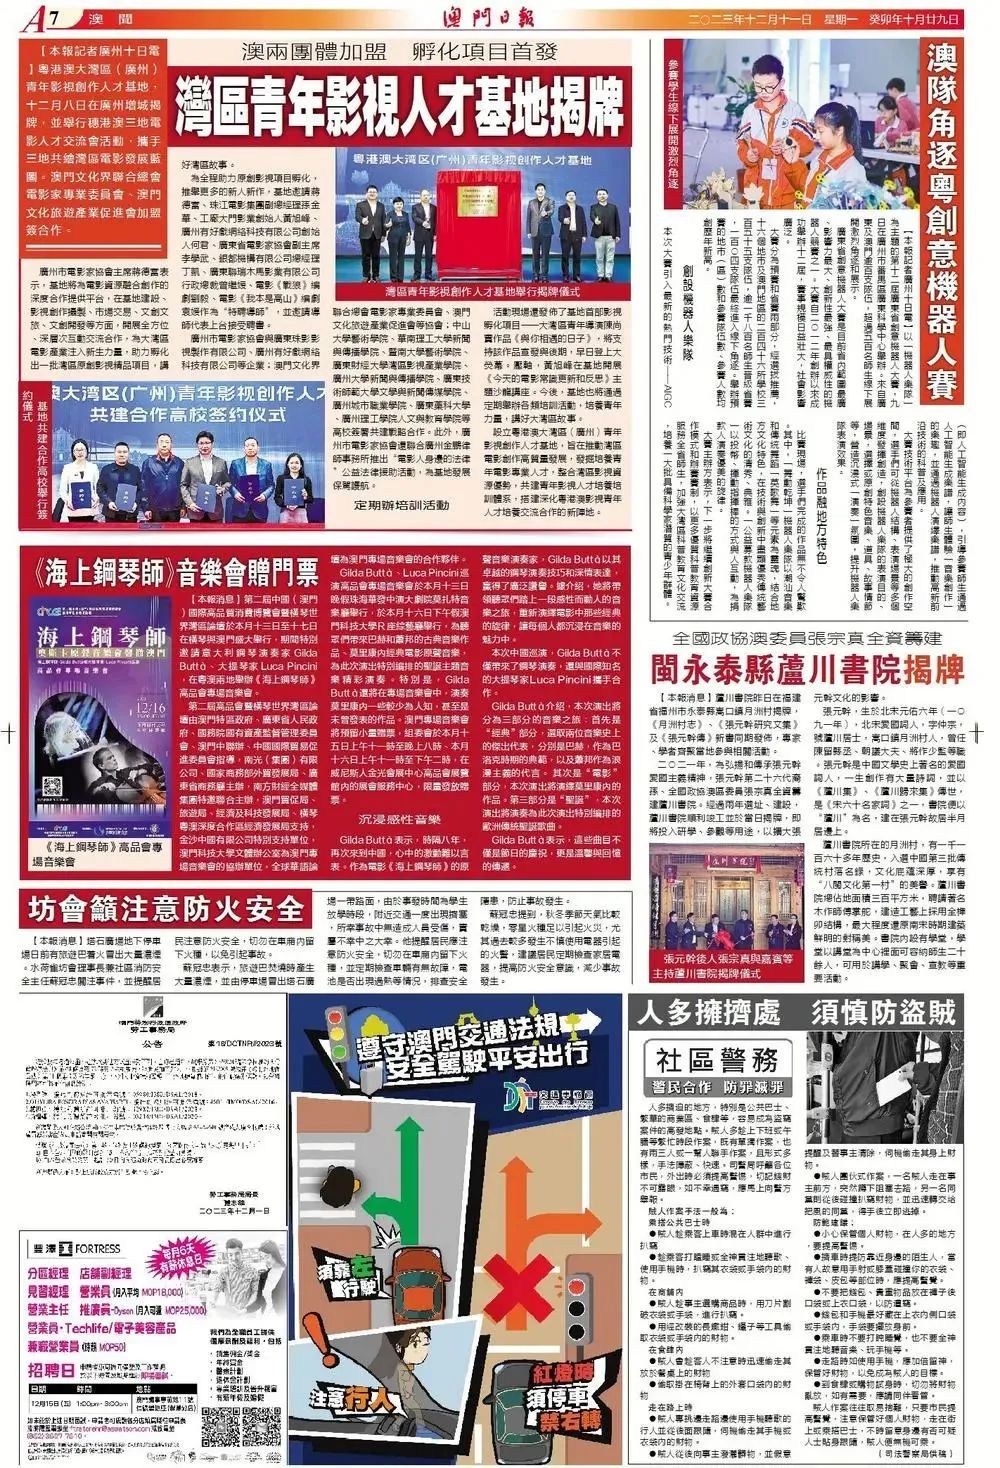 永泰月洲村芦川书院揭牌新闻报道阅读量二天超过二百万